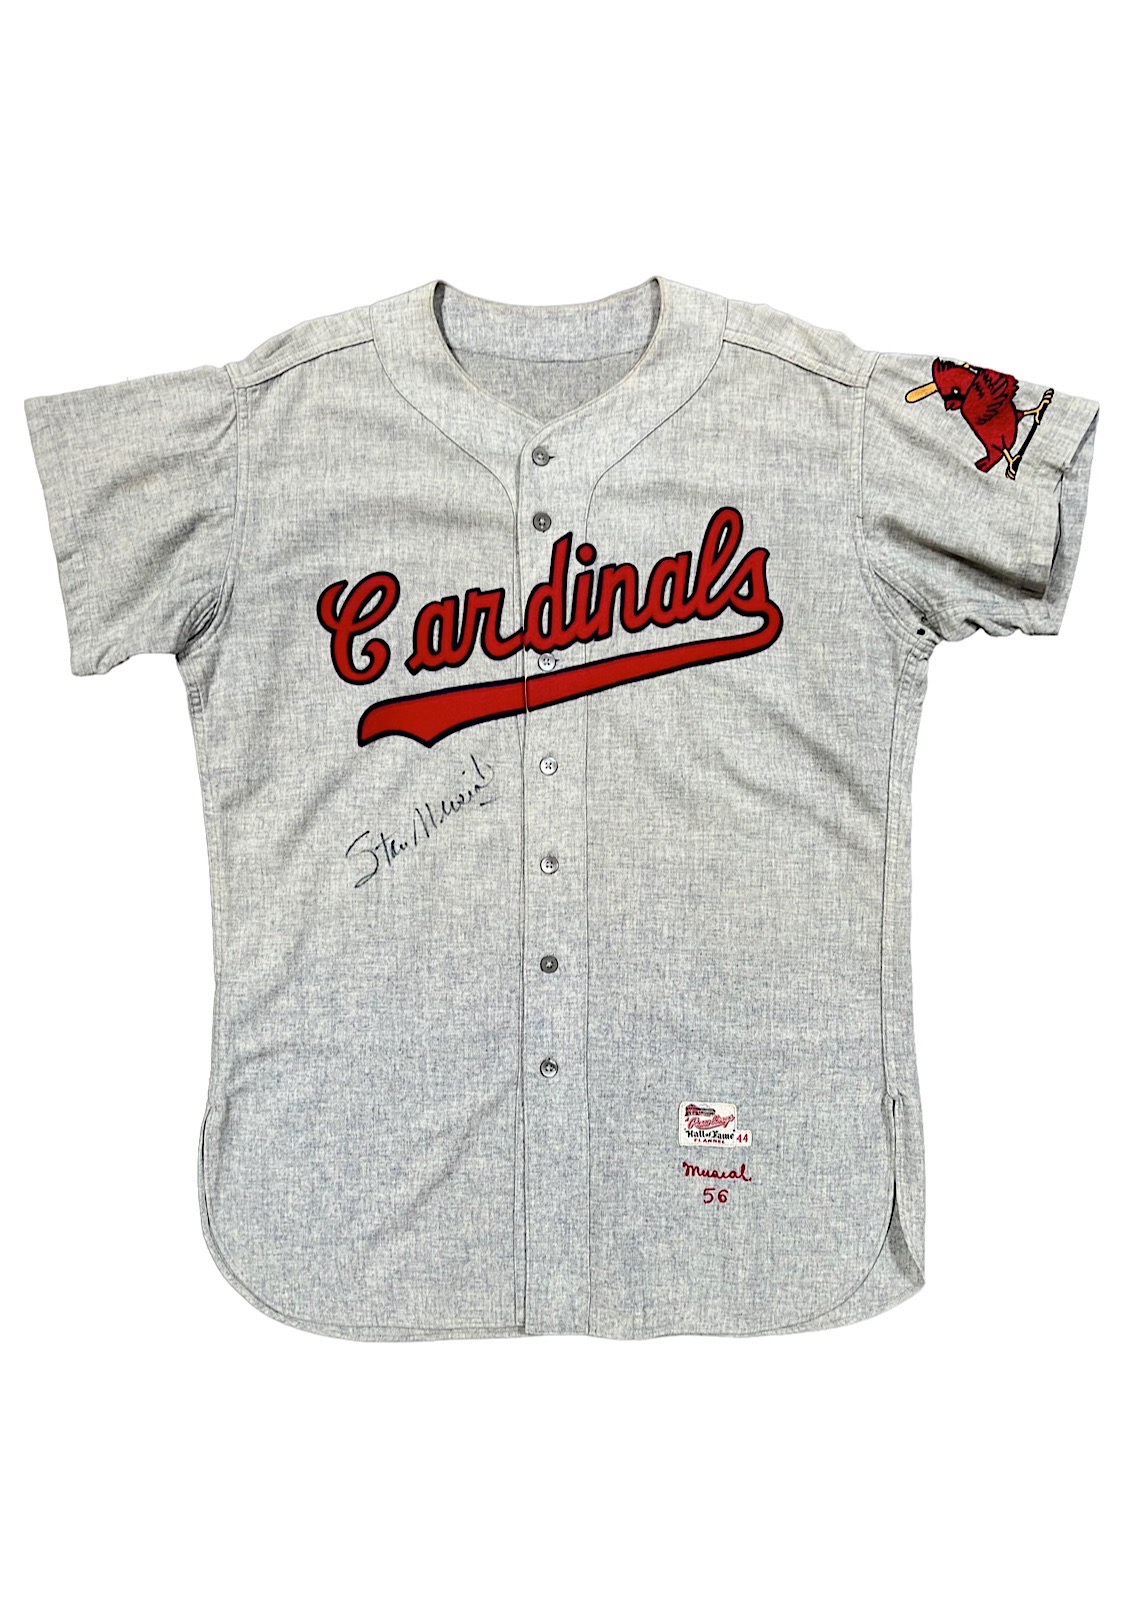 Stan Musial St. Louis Cardinals Jerseys, Stan Musial Shirt, Allen